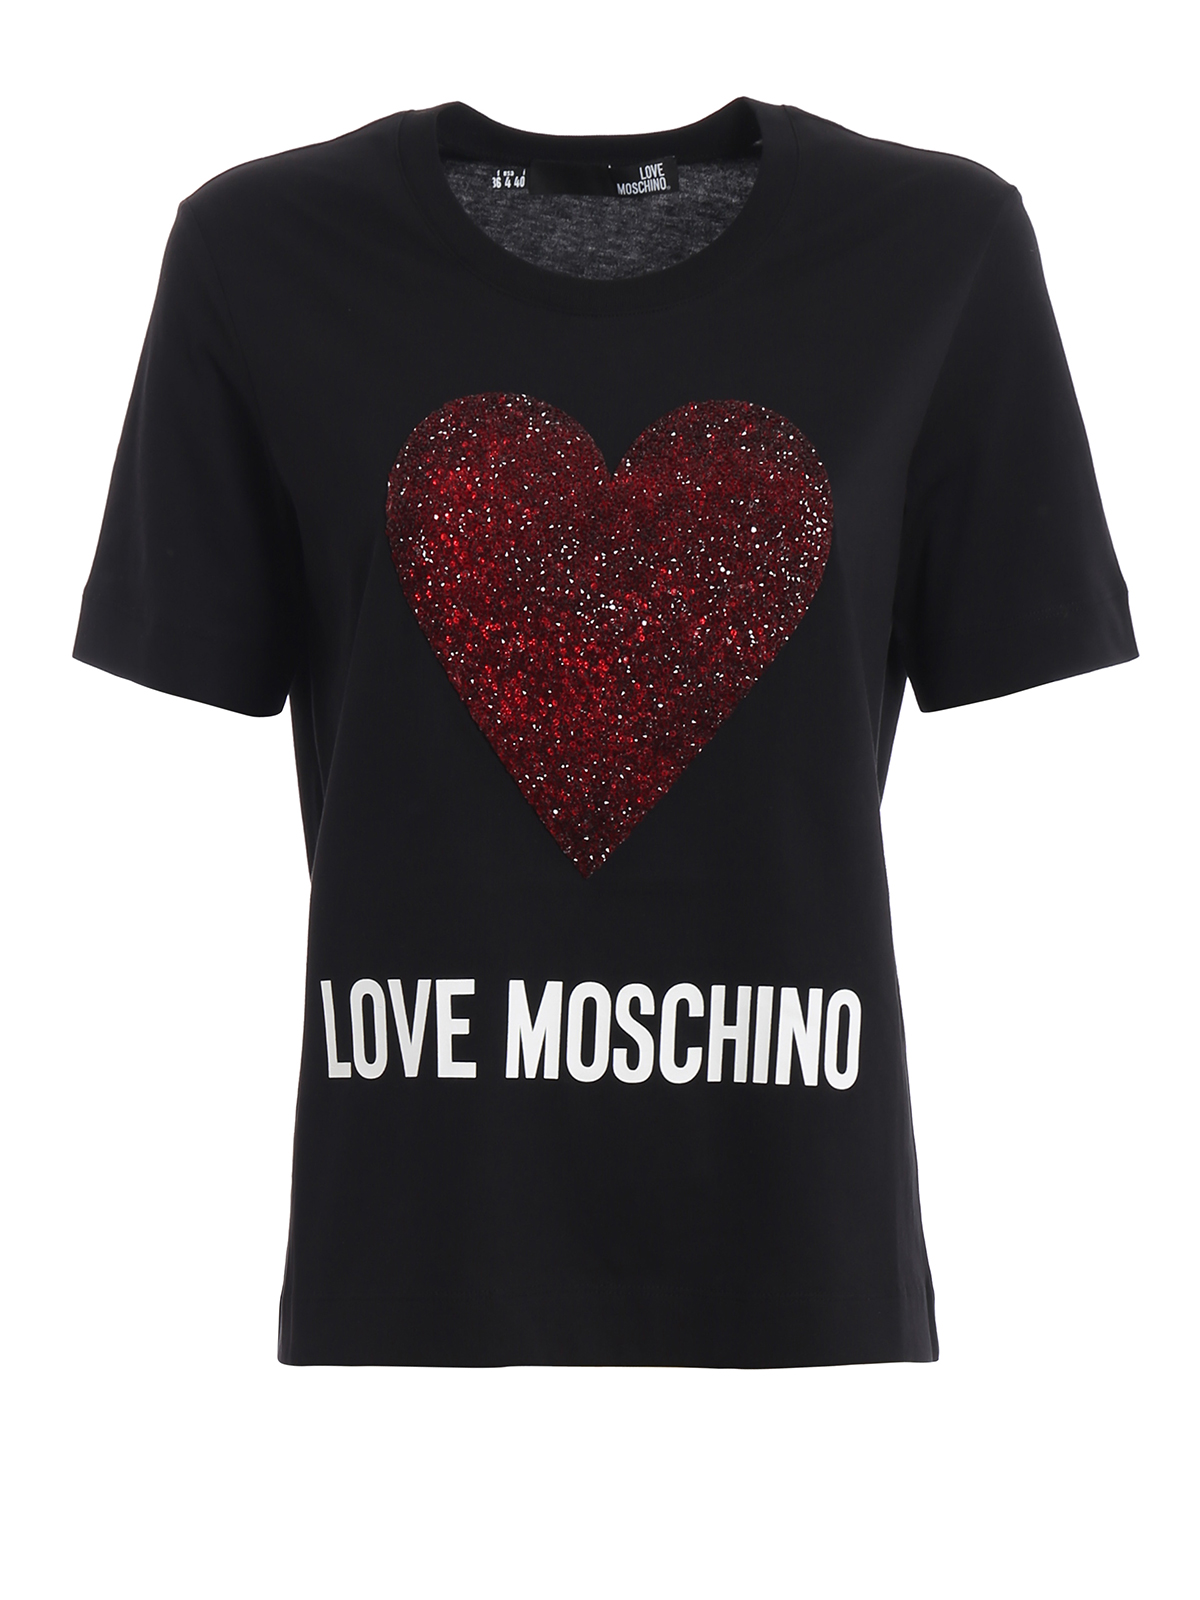 love moschino tee